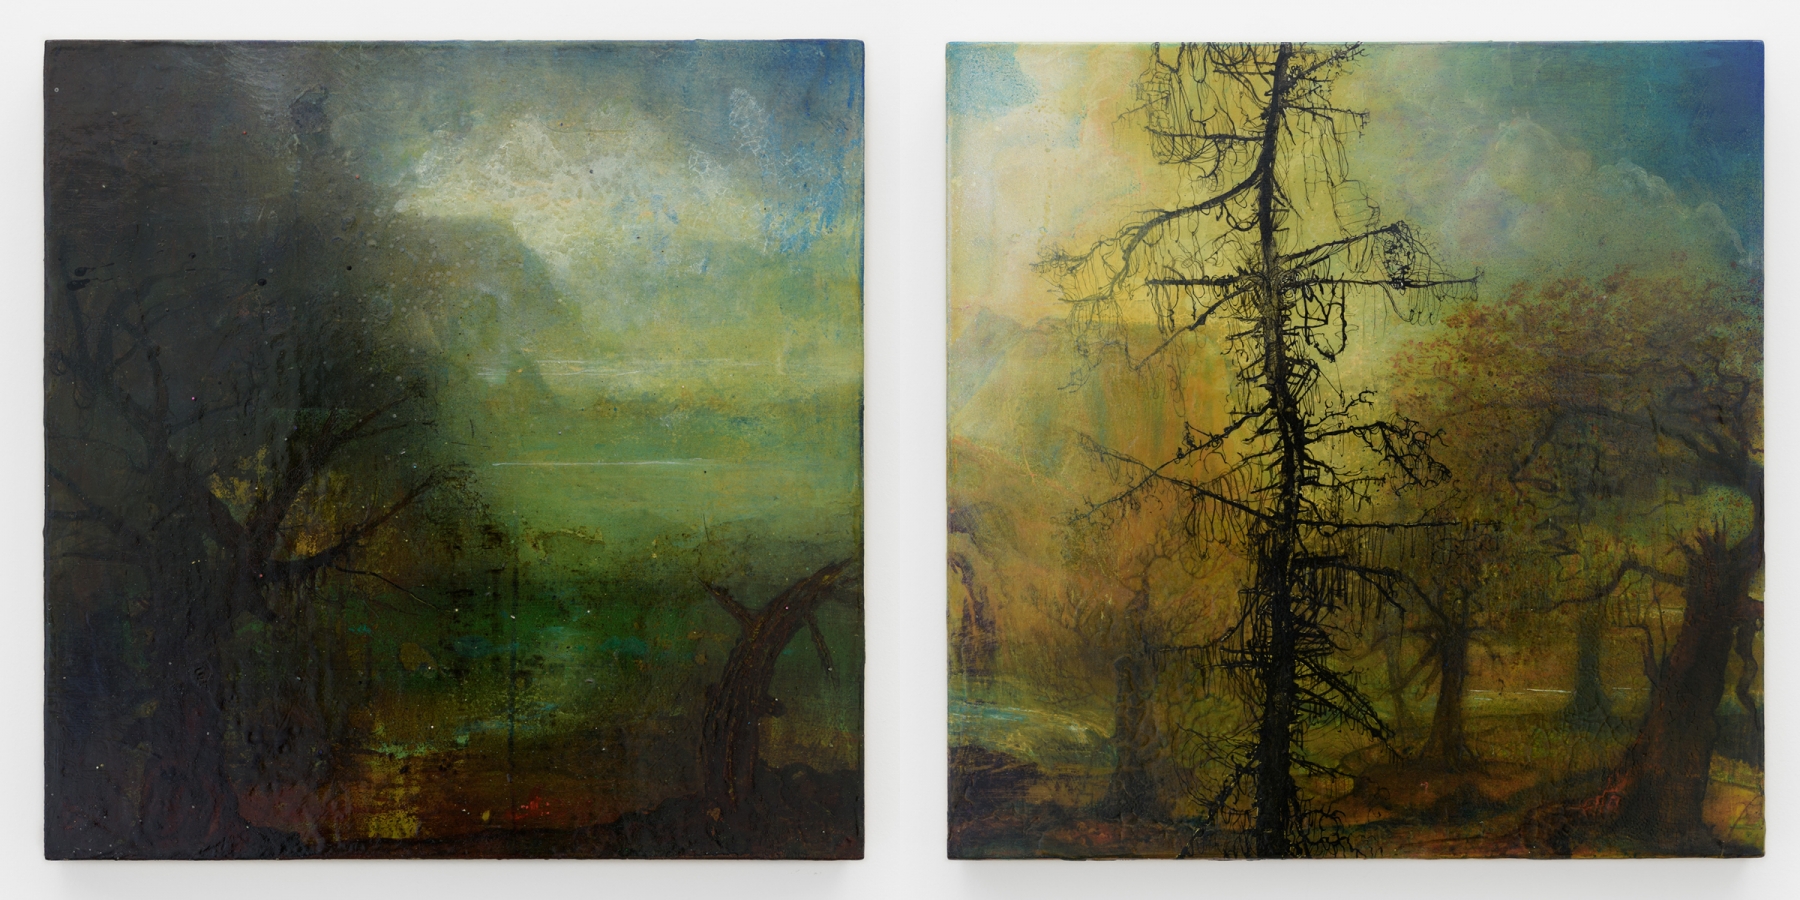 Left:&nbsp;Untitled, 2010 (JN 722)
Right:&nbsp;Untitled, 2010 (JN 731)
Inquire